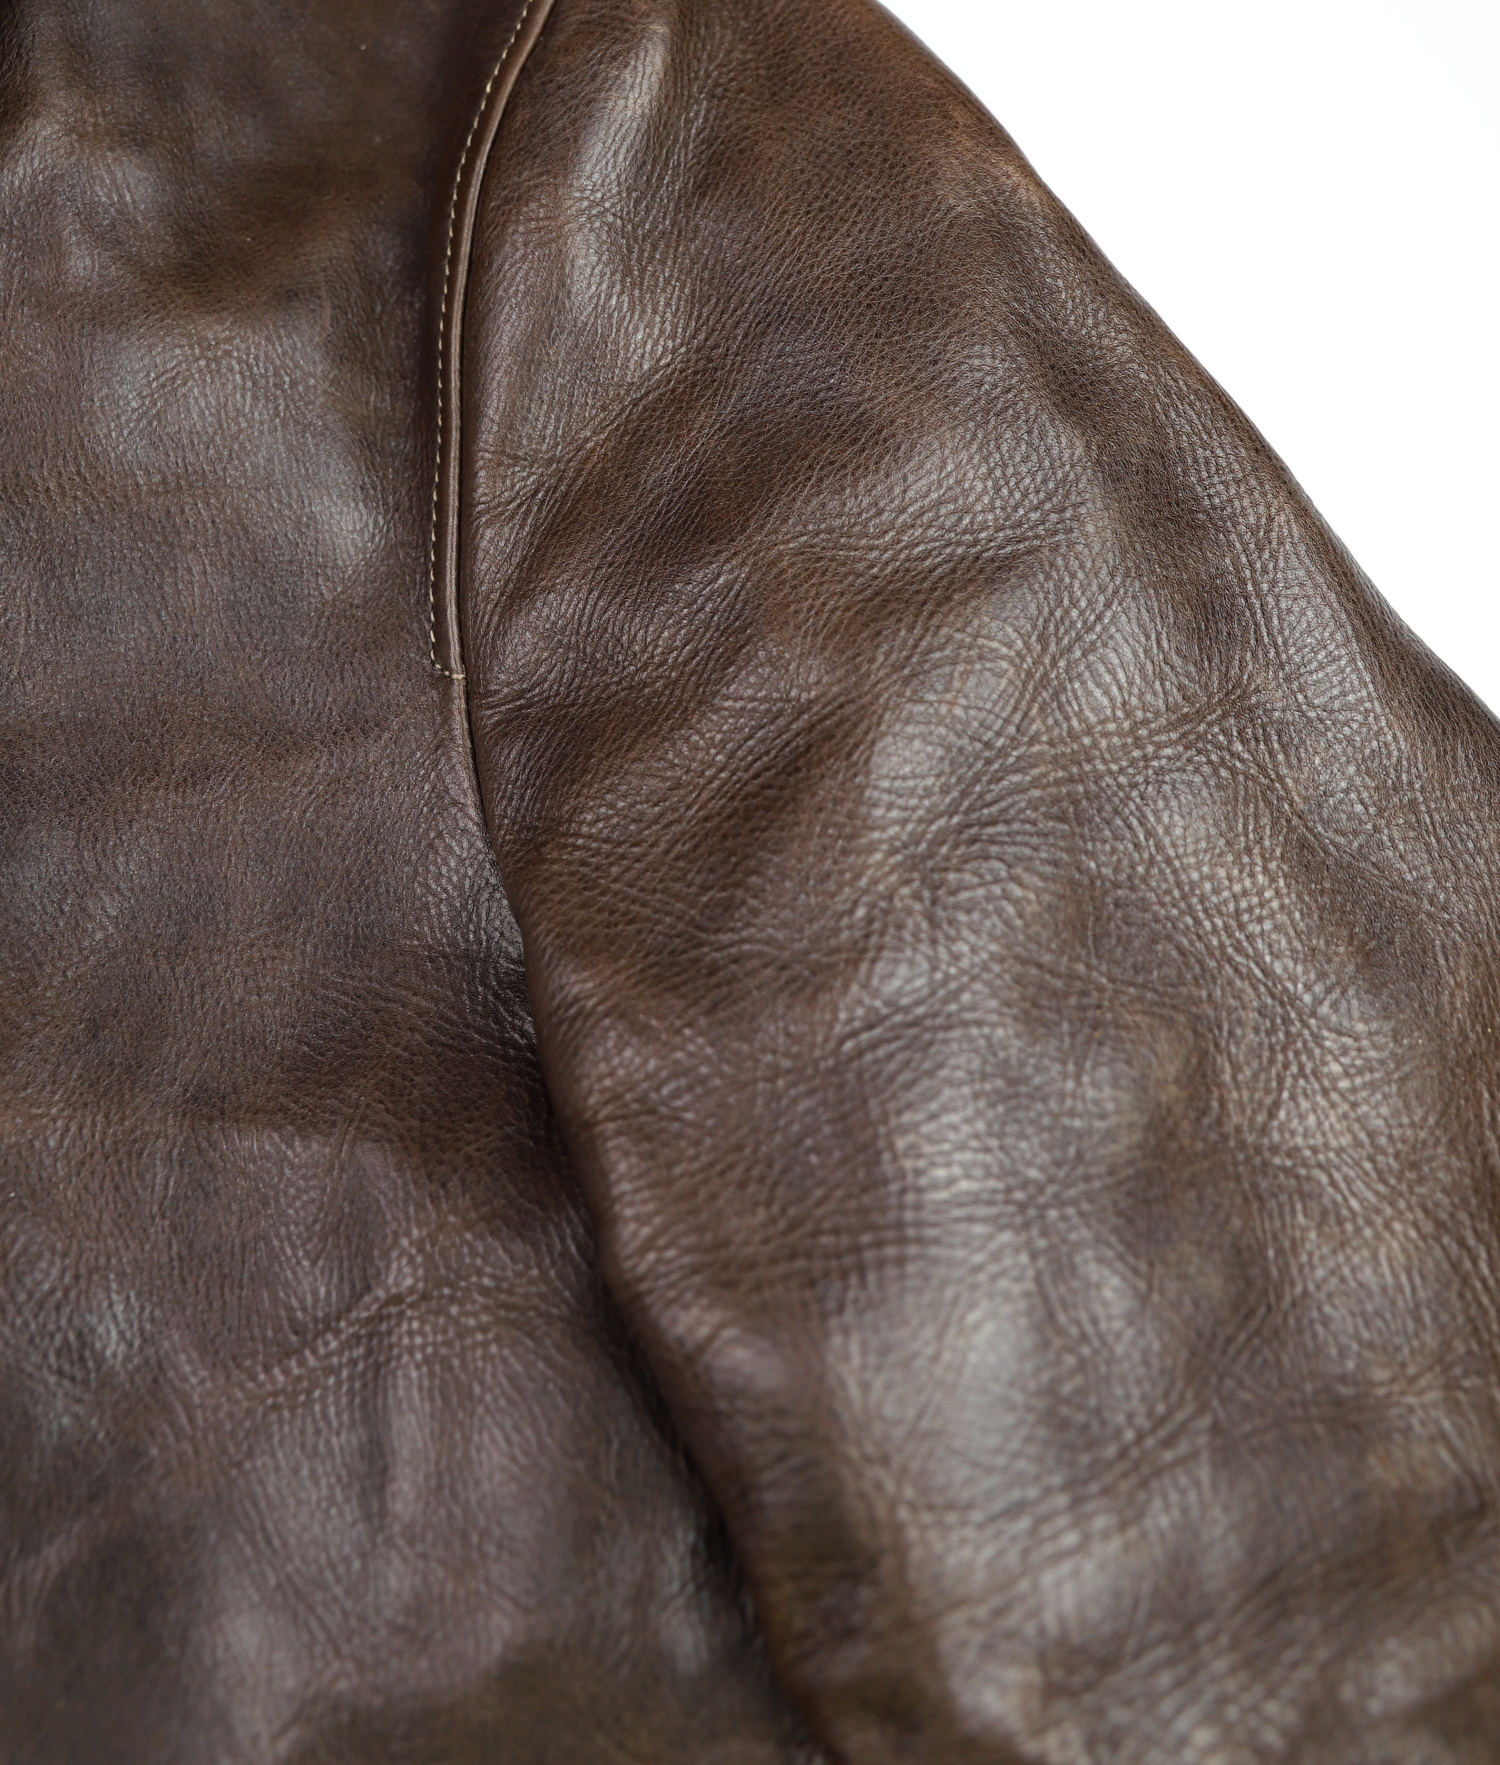 Thedi Markos Button-Up Shawl Brown Cowhide L1 sleeve grain.jpg